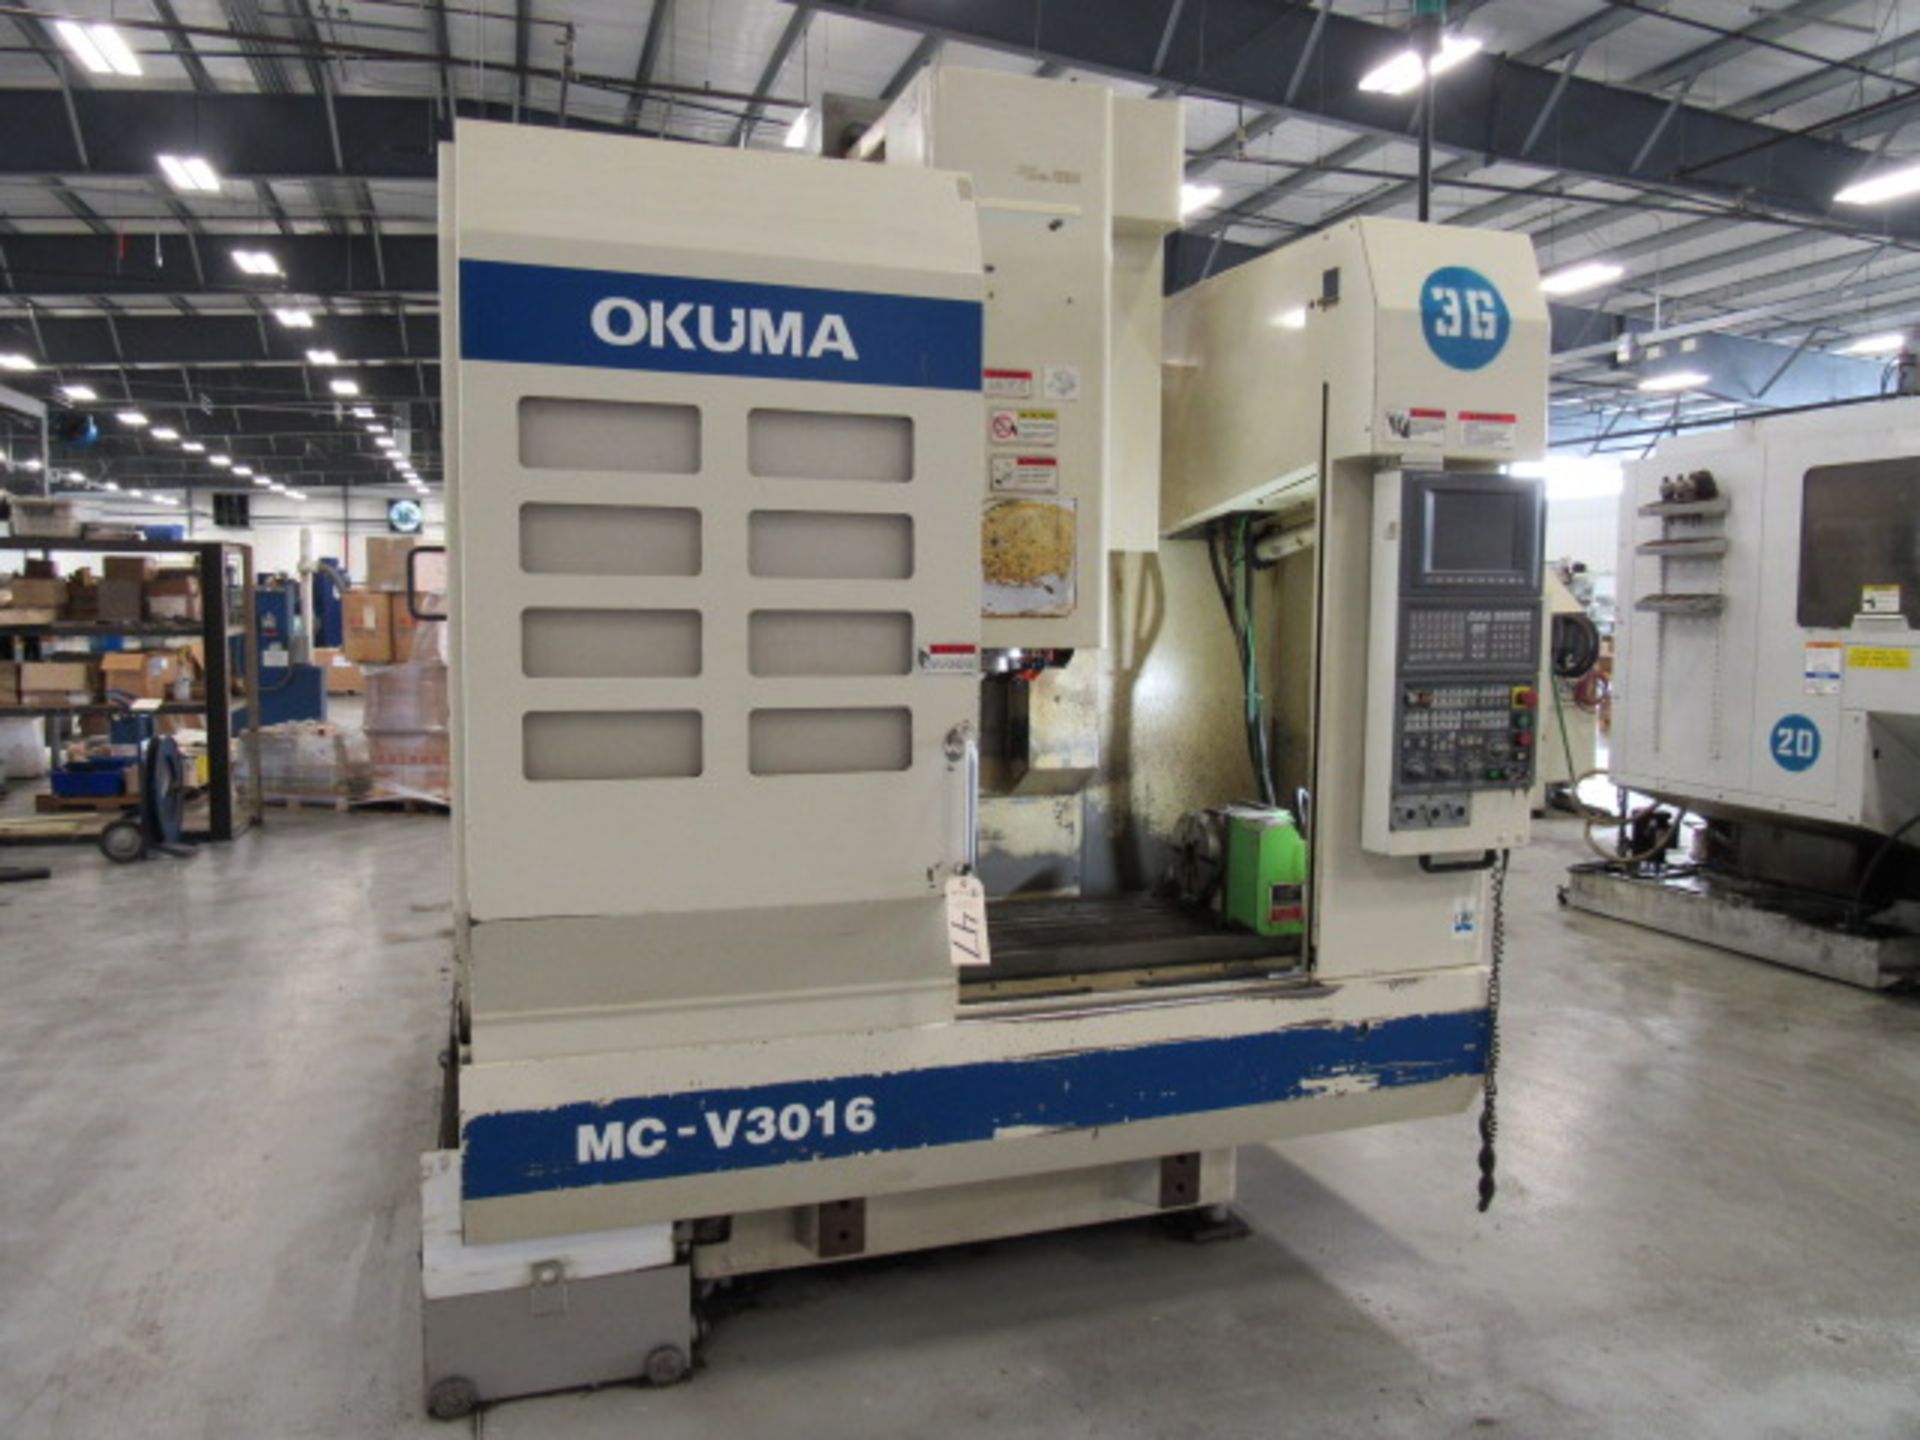 Okuma MC-V3016 CNC Vertical Machining Center - Image 2 of 5